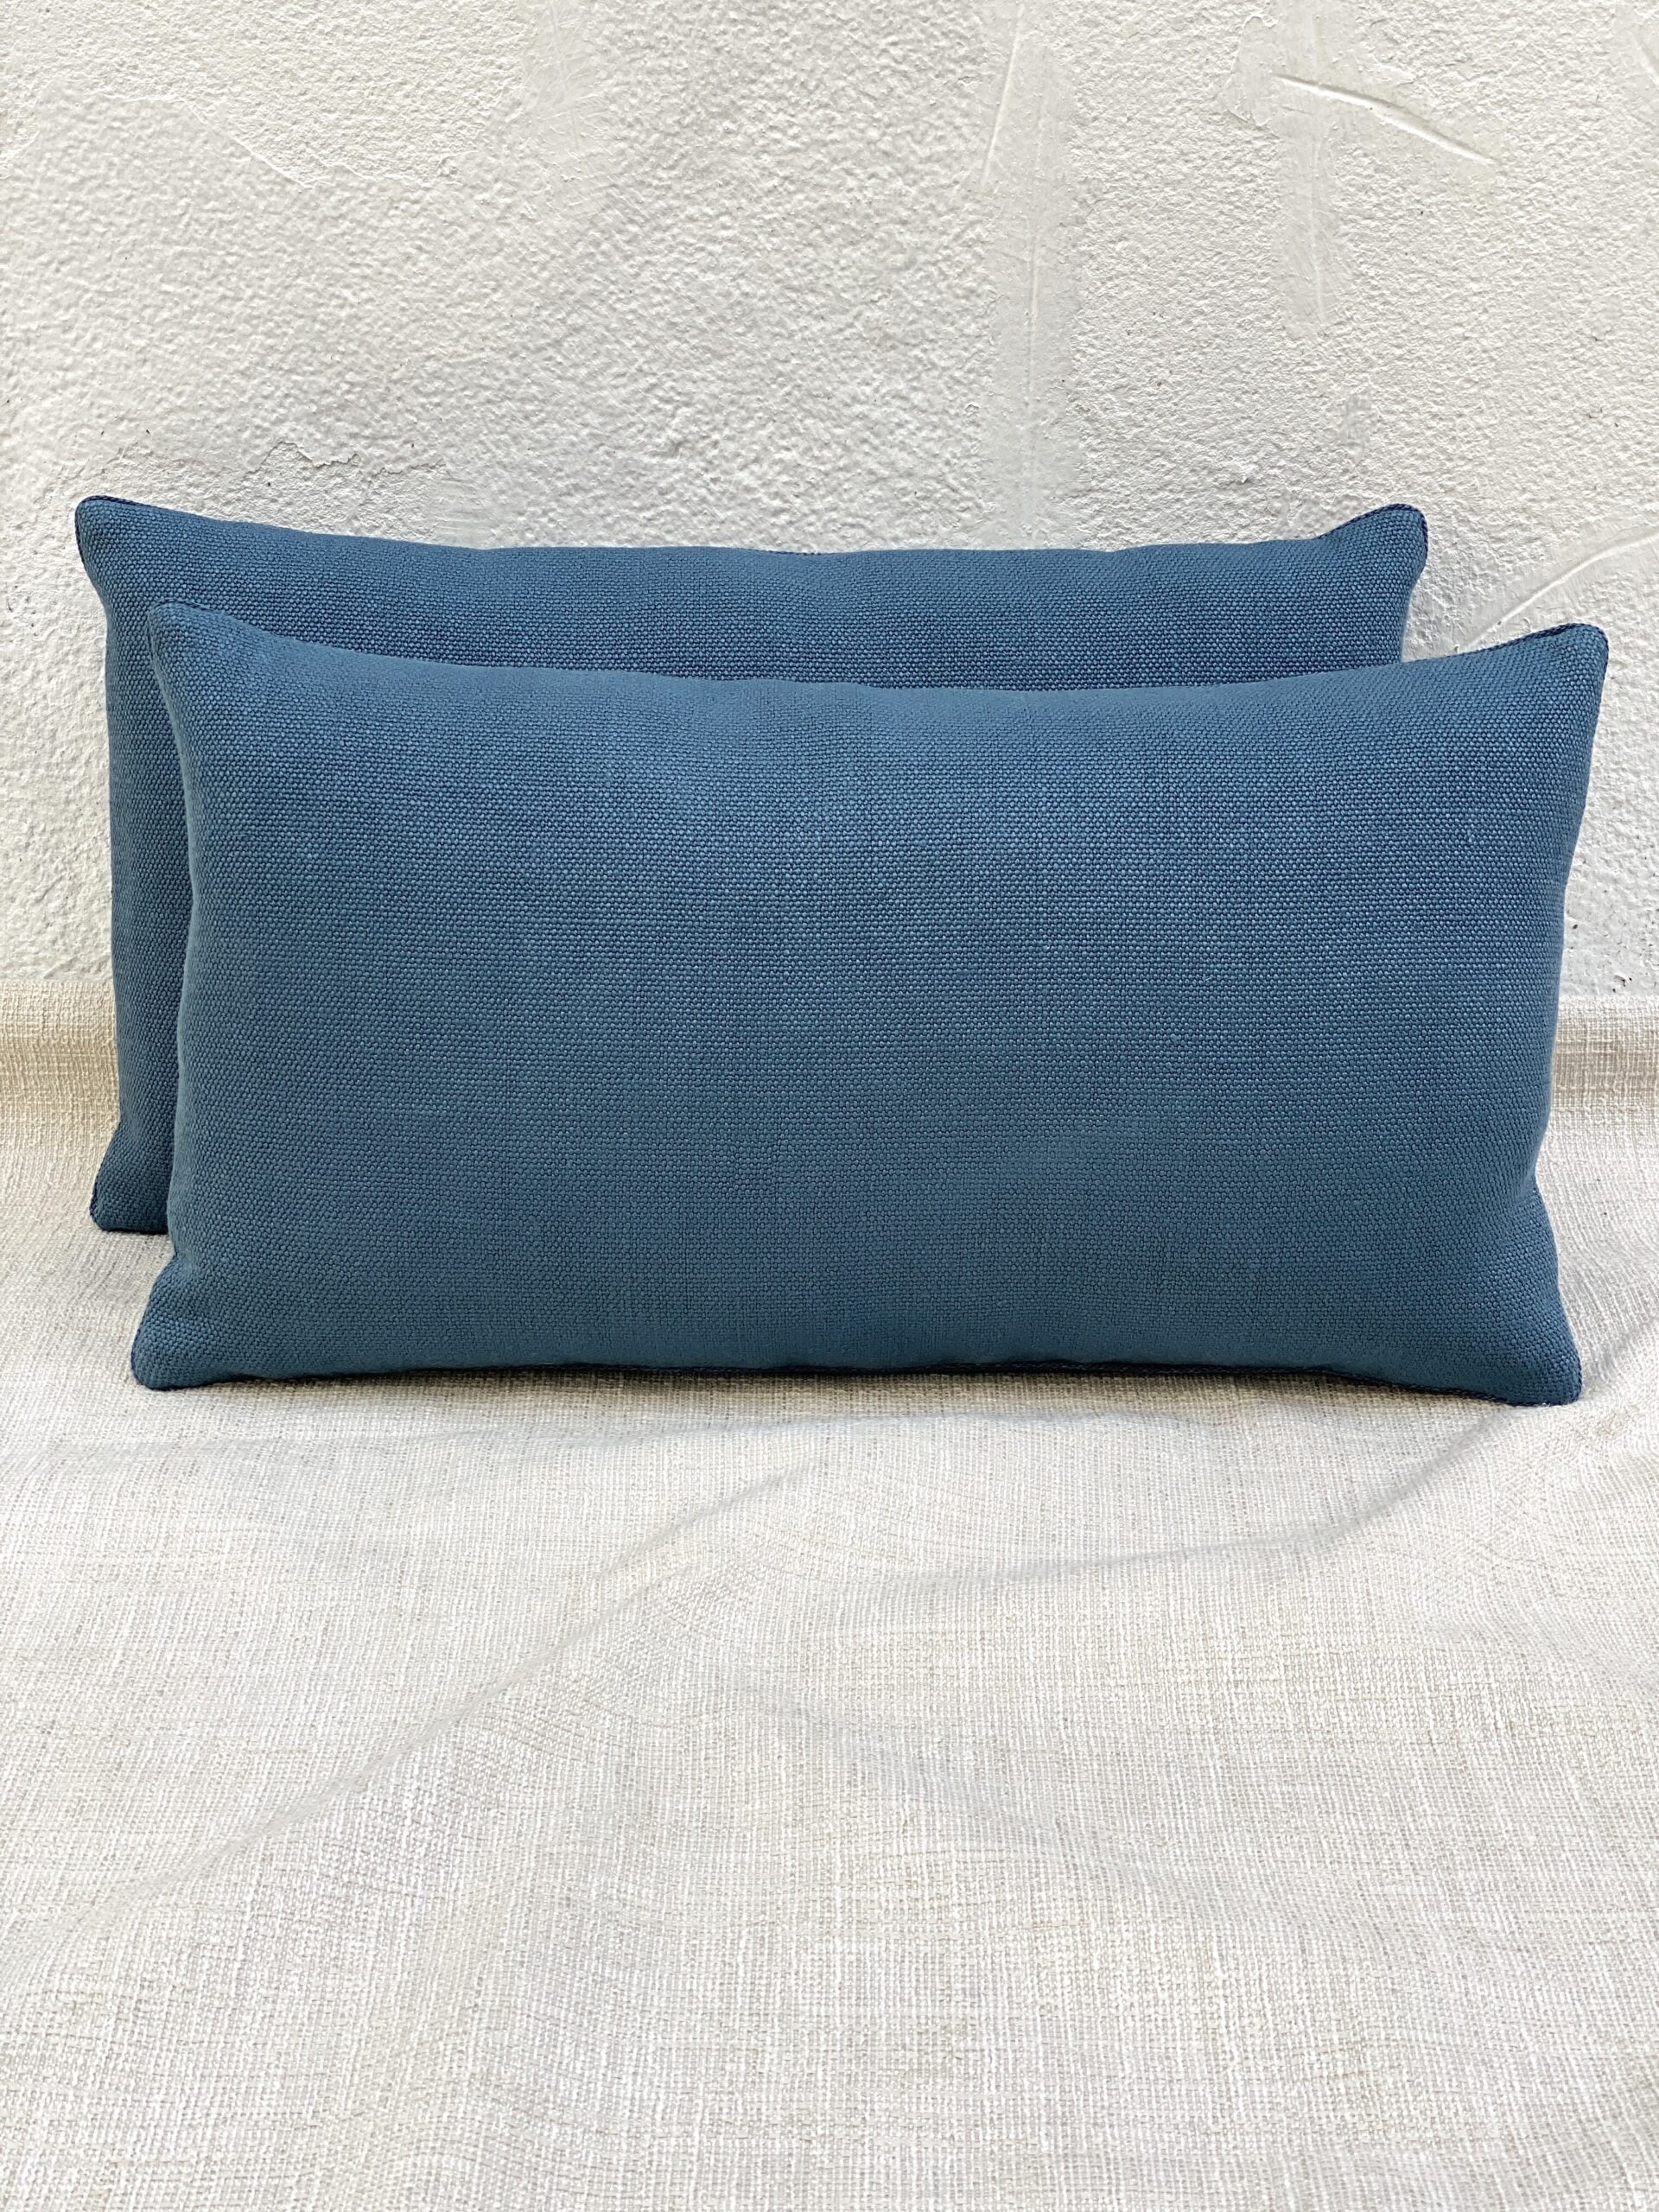 Larsen Tilia Pillows